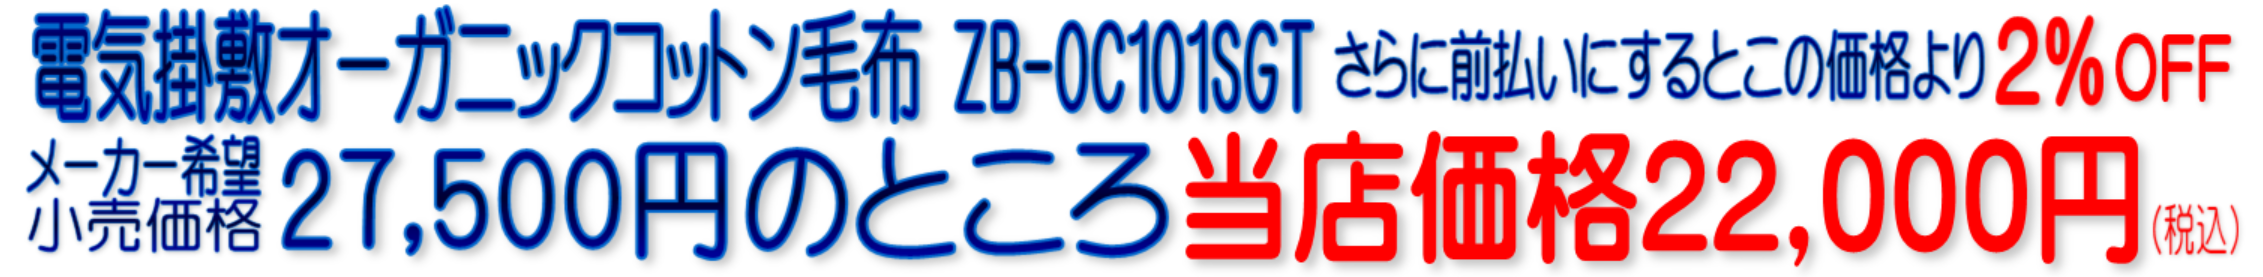 ZB-OC101SGT 電気掛敷オーガニック毛布